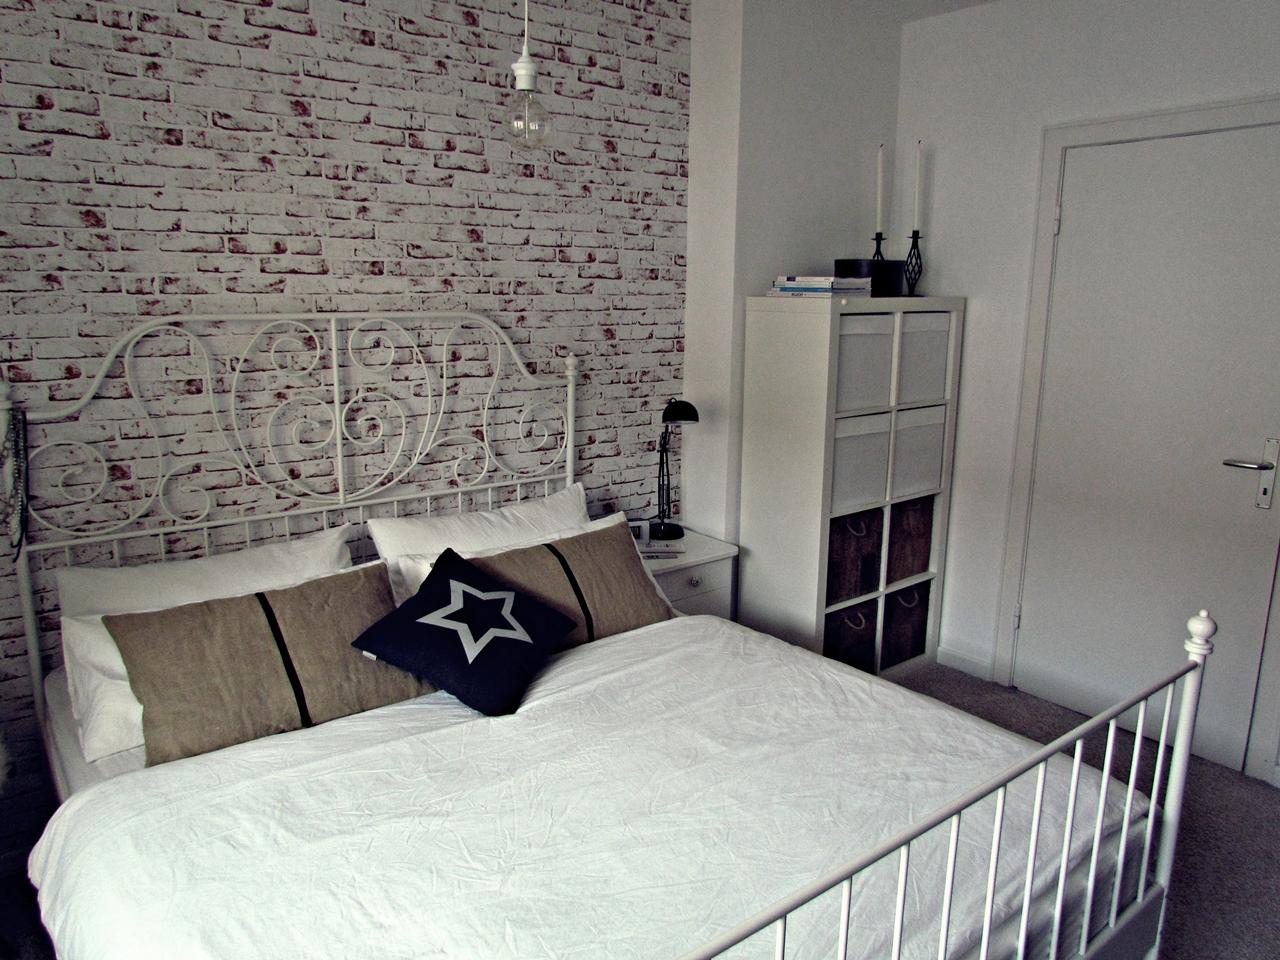 Schlafzimmer mit Maueroptik Wand #mauerwand #metallbett #sterndeko ©roomrevolution